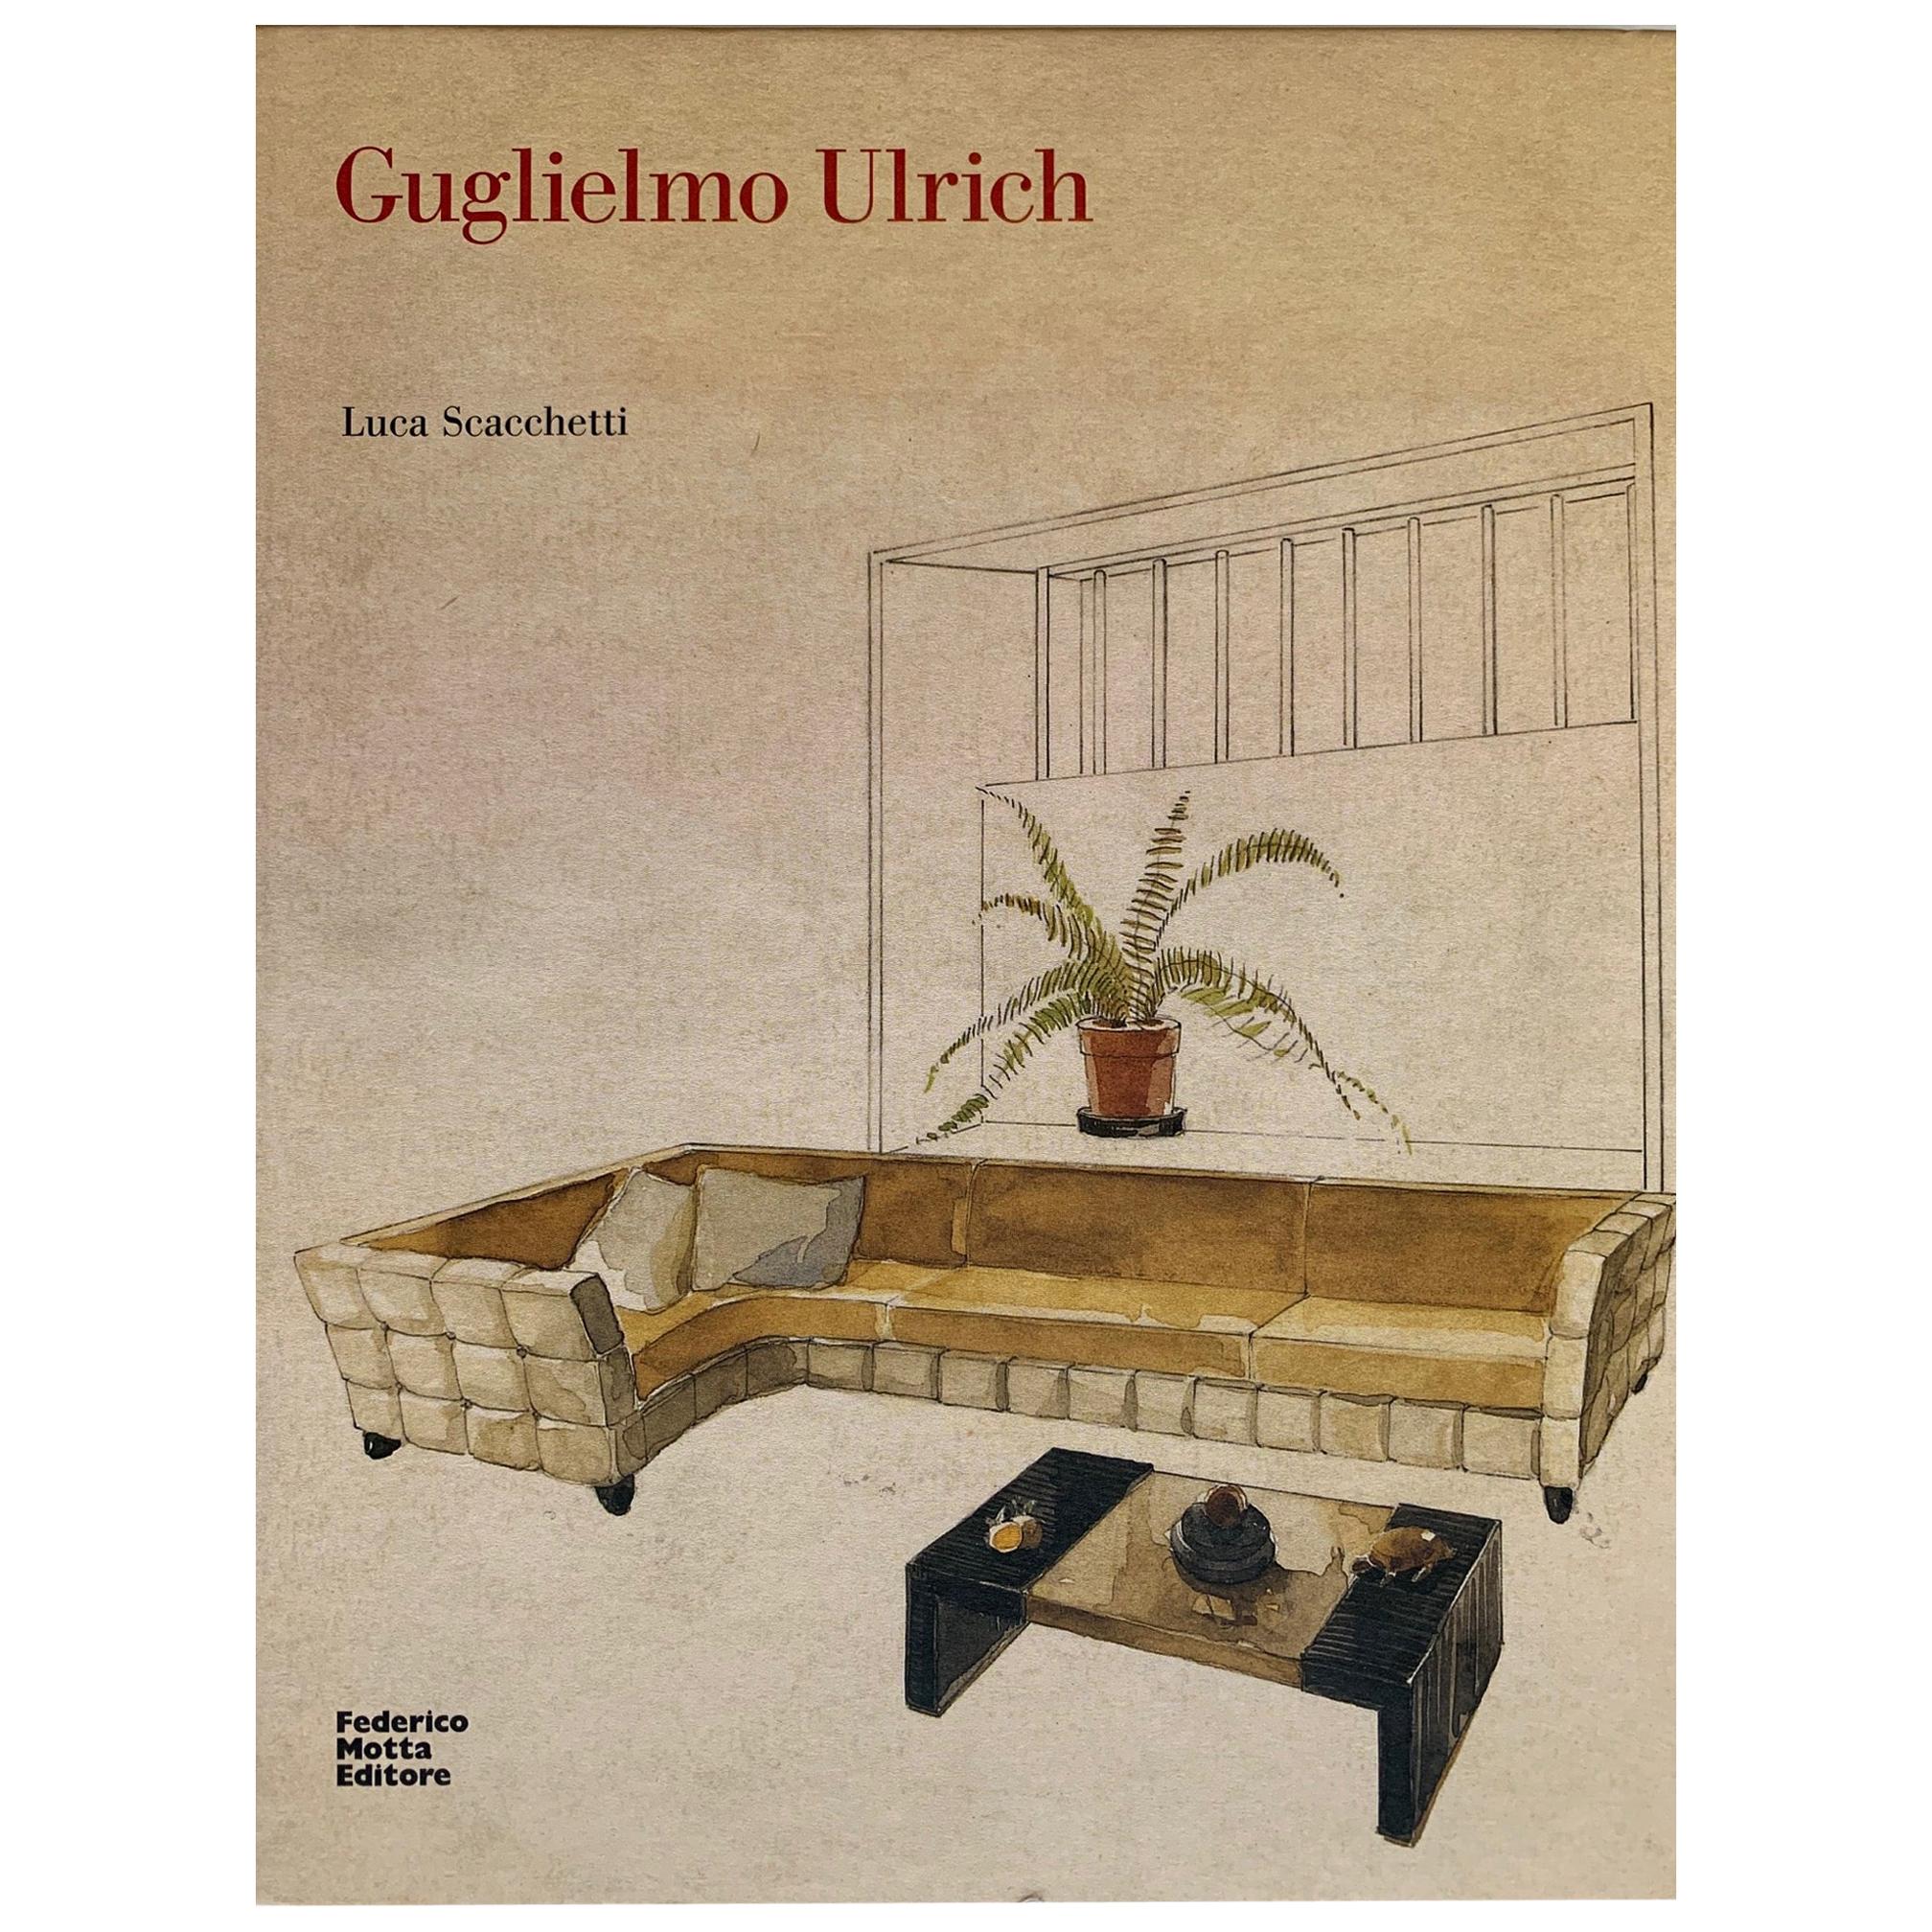 Guglielmo Ulrich Monograph, 2009